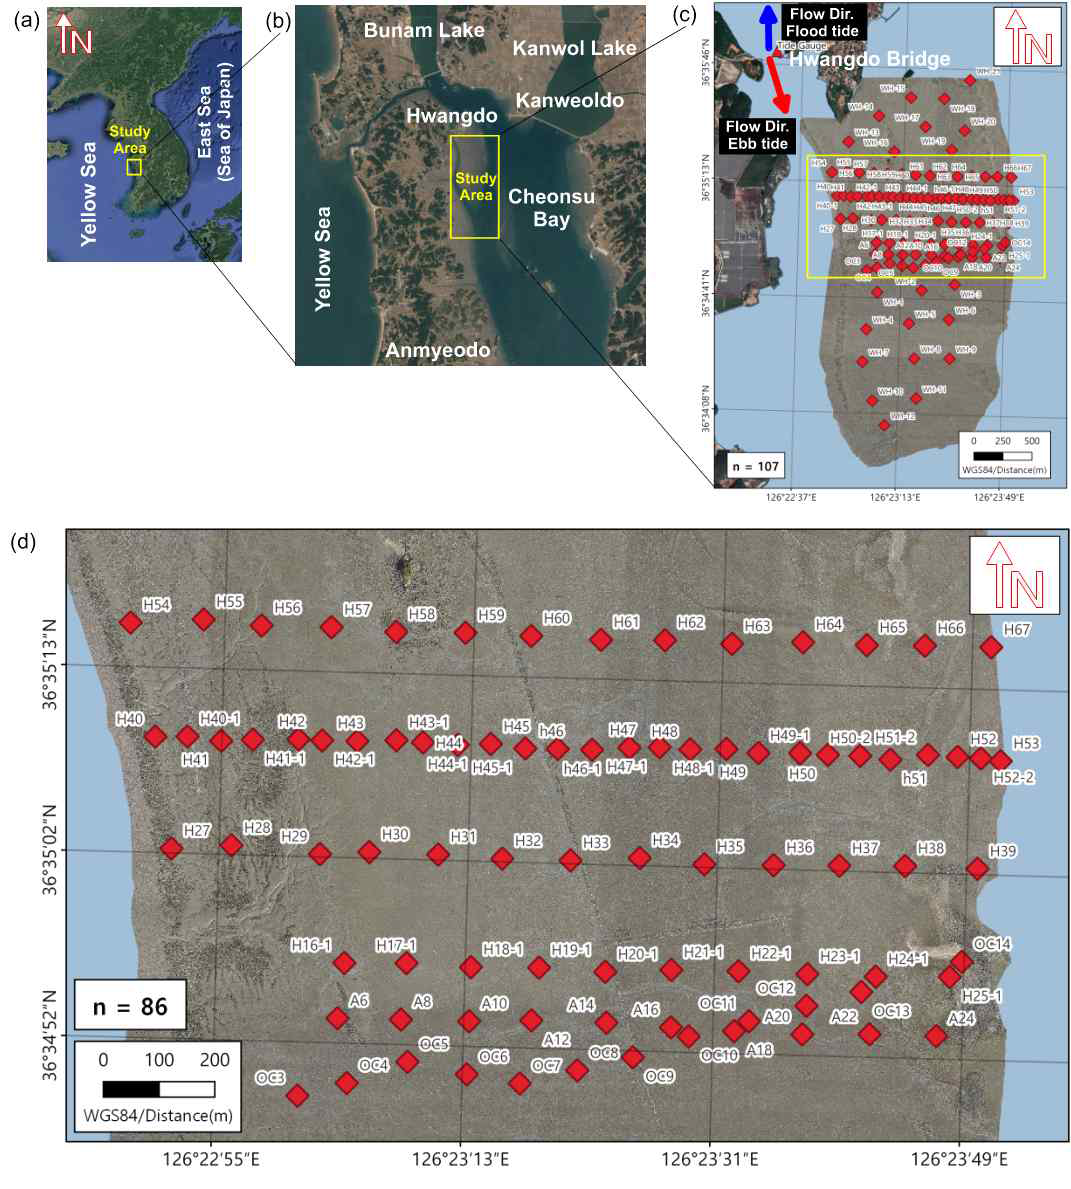 2022년 10월(2차 통합조사) (a) 연구지역 (b) 황도 갯벌 내 상세 정점. ((c)의 전체 마름모는 107개의 샘플링 포인트를 나타냄